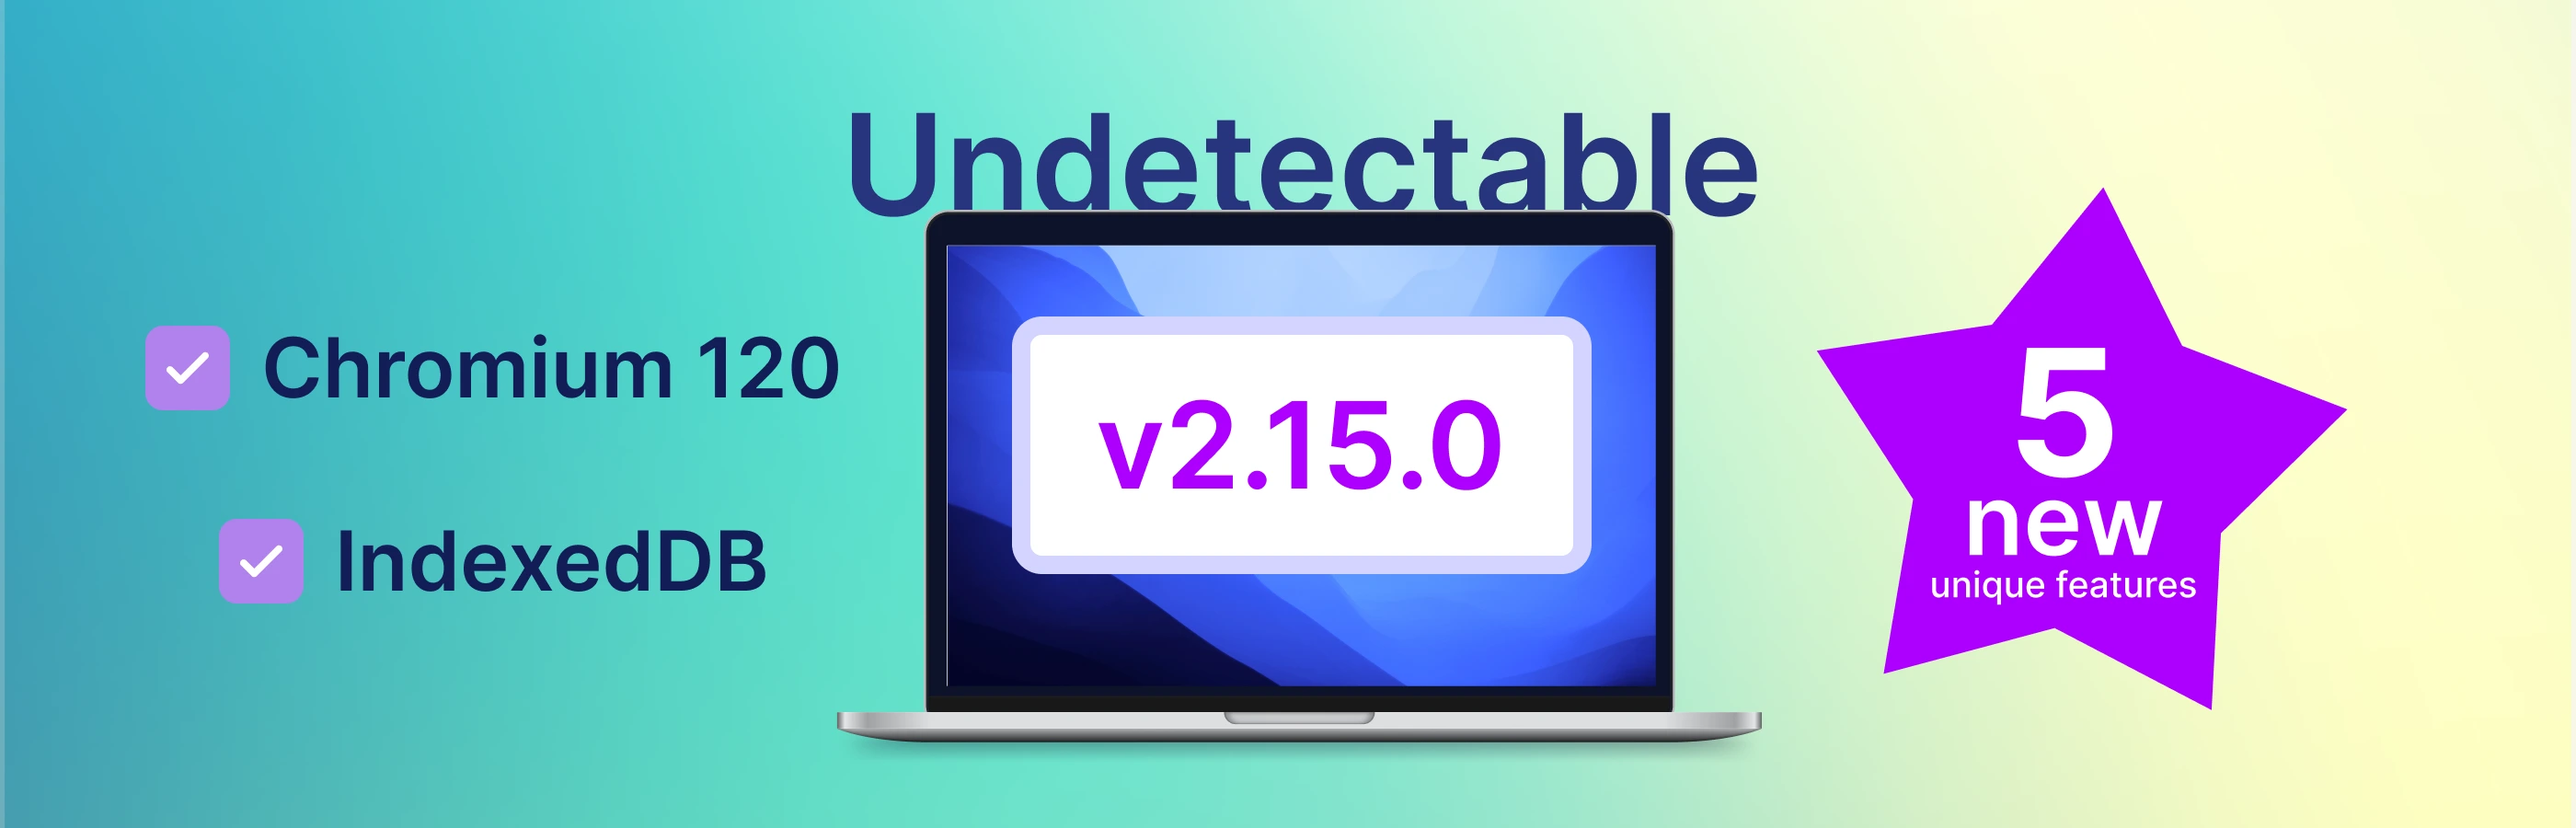 反检测浏览器 Undetectable: 新功能和基于 Chromium 内核的更新